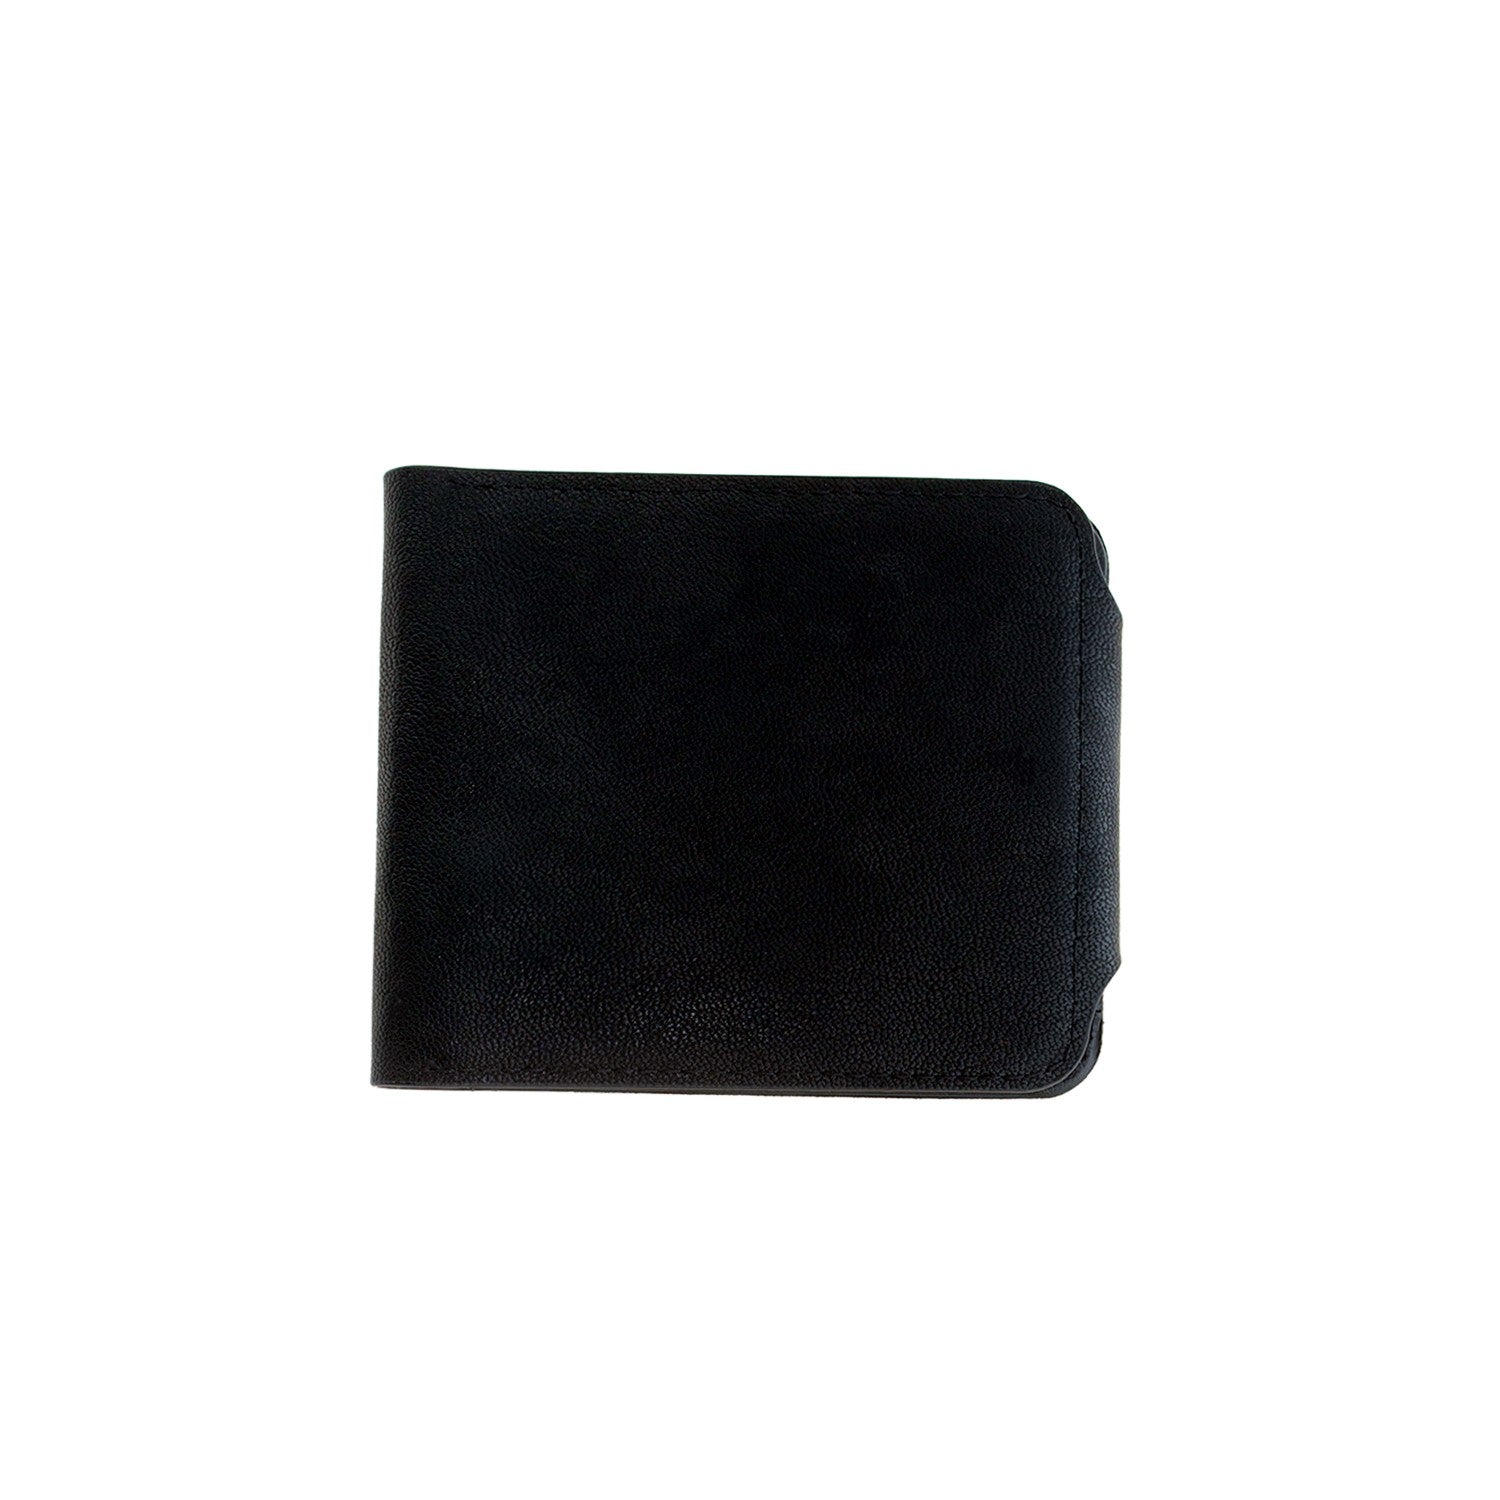 CLEARANCE WALLETS IN BLACK (CASE OF 60 - $1.00 / PIECE) - Wholesale Men's Wallets in Black SKU: 1555-BLK-60